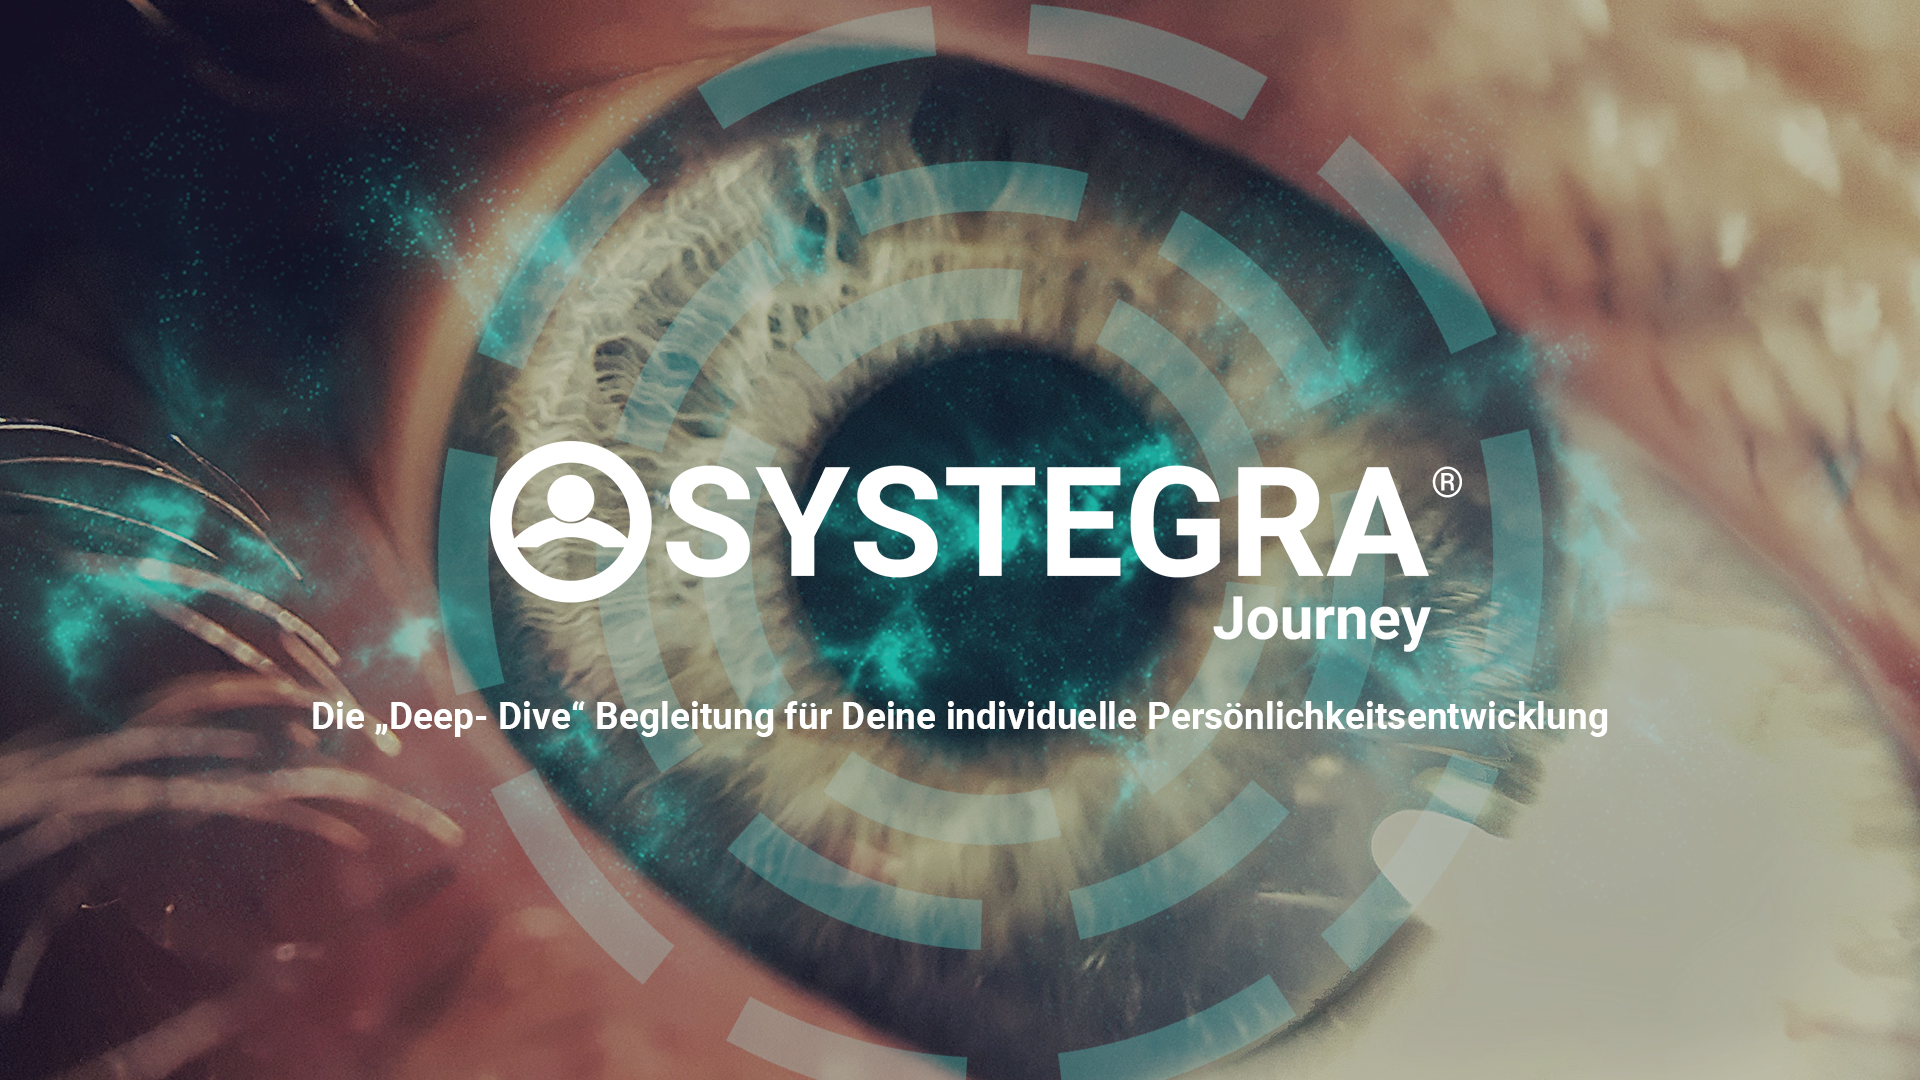 SYSTEGRA Journey 1920x1080 v2